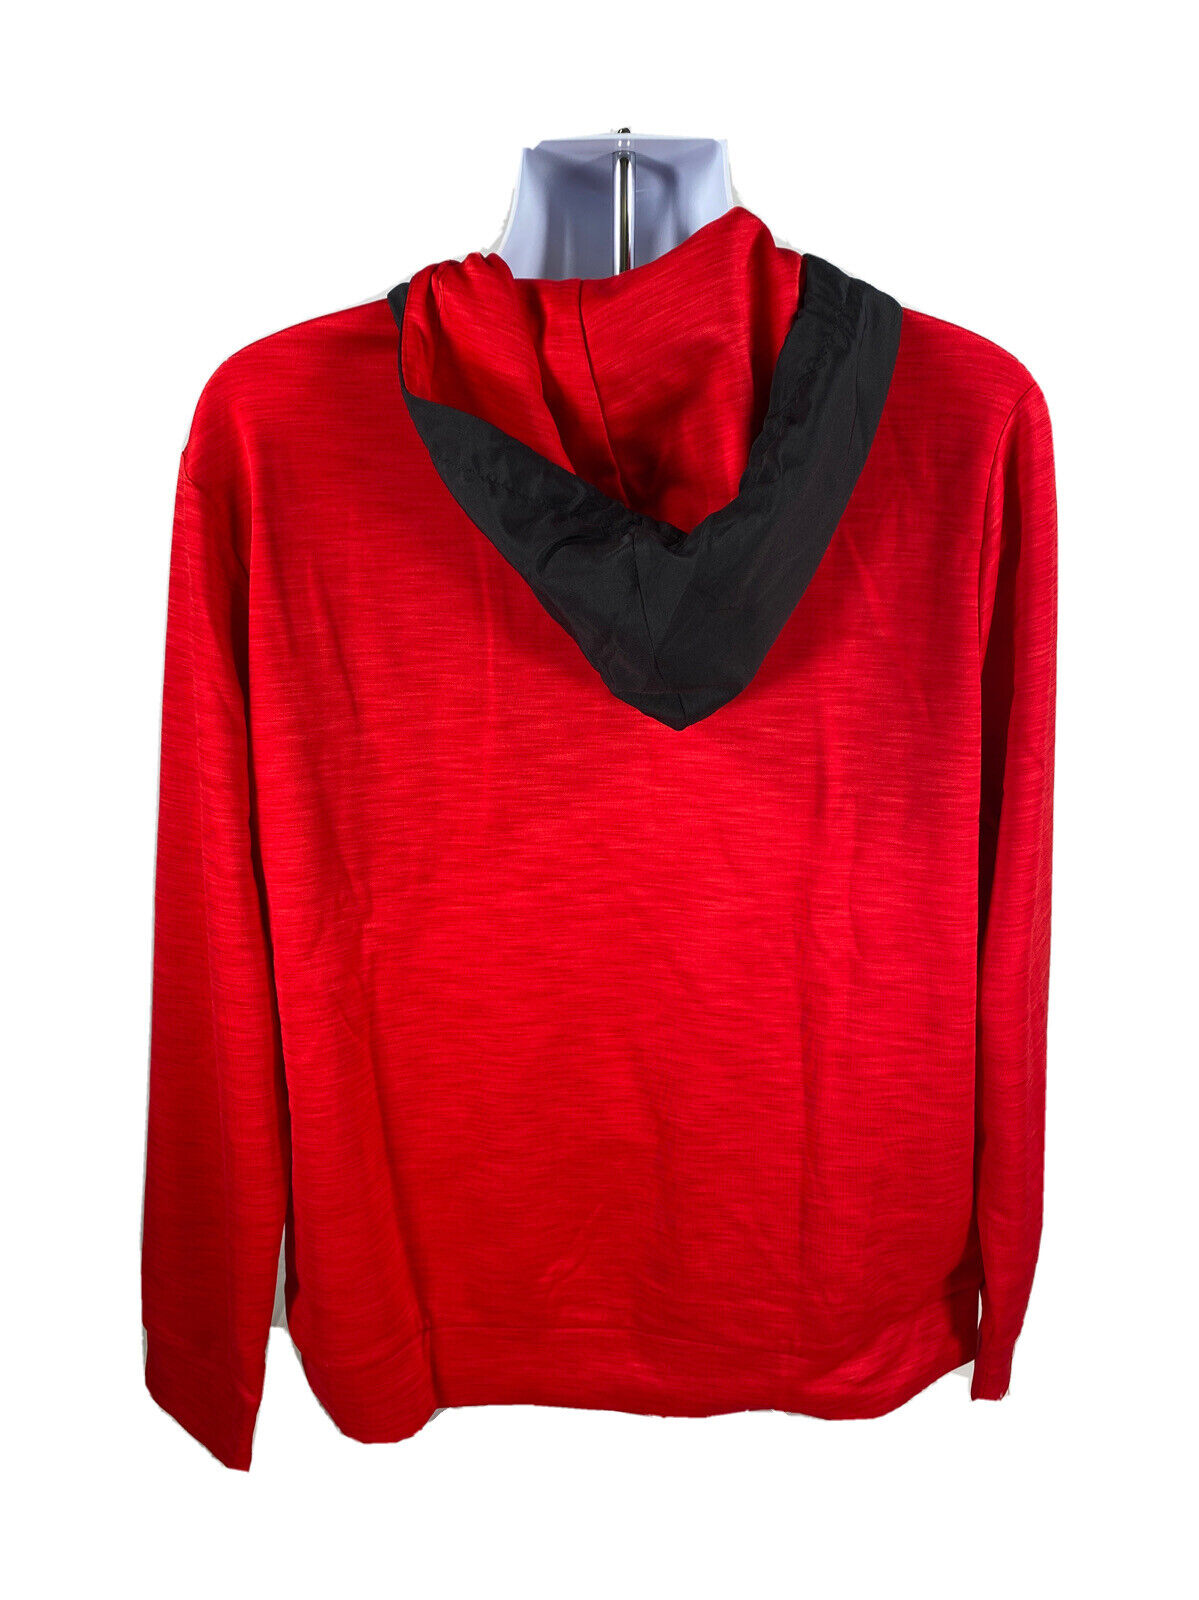 NUEVO Tek Gear Sudadera tipo jersey con cremallera de 1/4 y forro polar negro / rojo para hombre Talla M